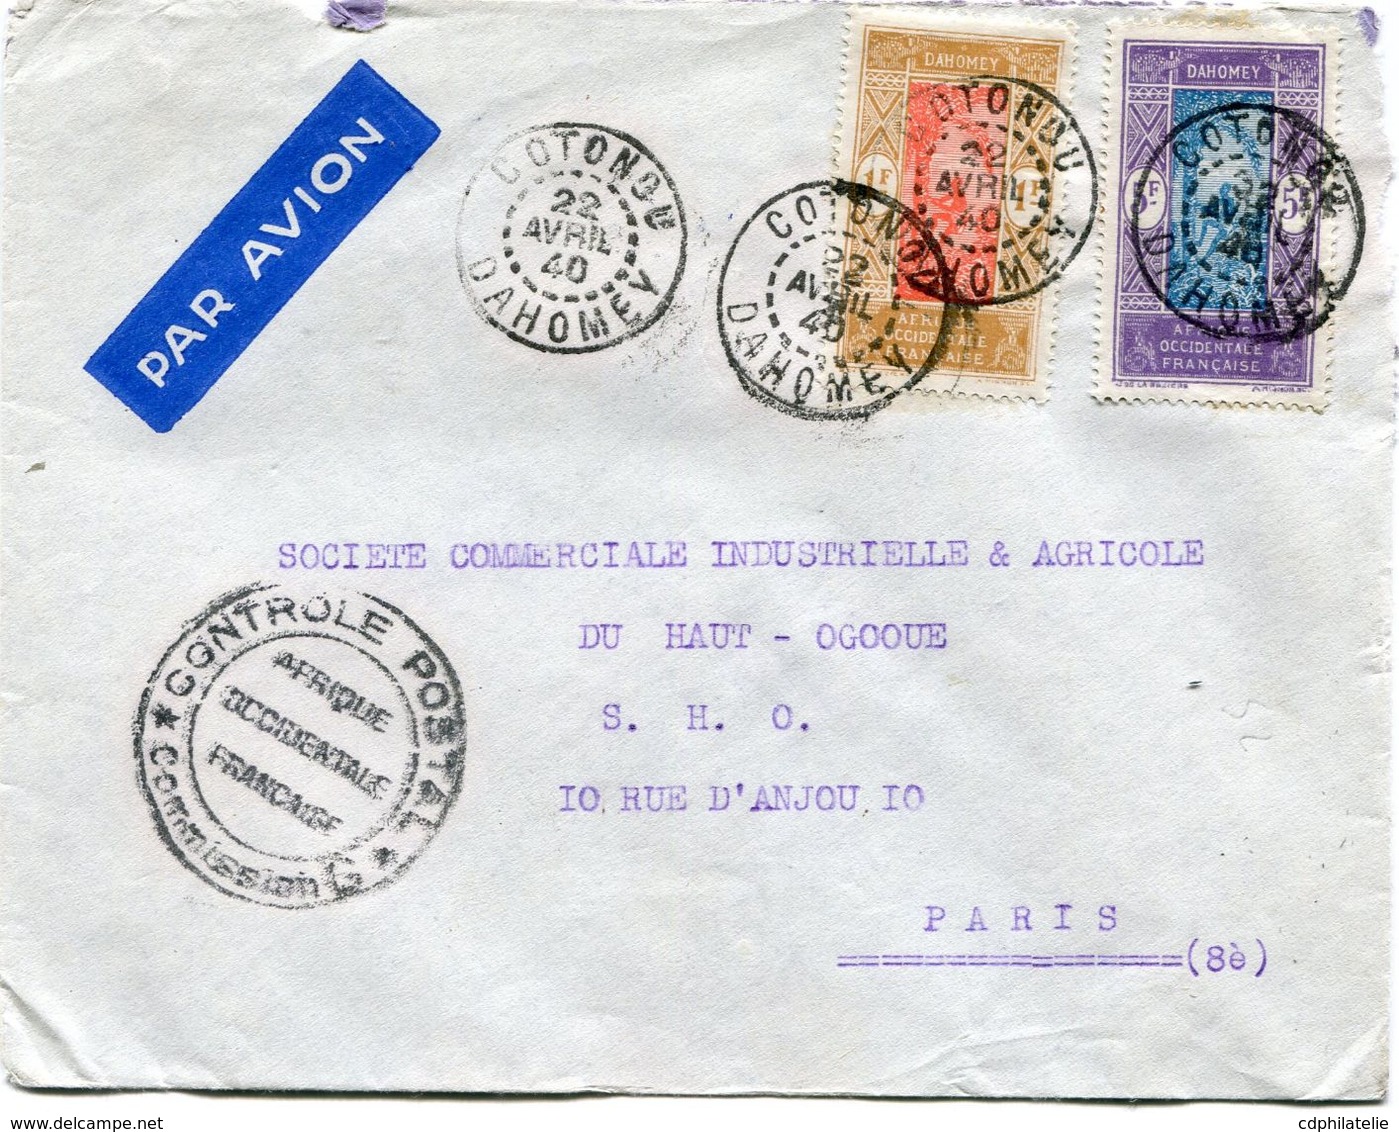 DAHOMEY LETTRE PAR AVION CENSUREE DEPART COTONOU 22 AVRIL 40 DAHOMEY POUR LA FRANCE - Cartas & Documentos